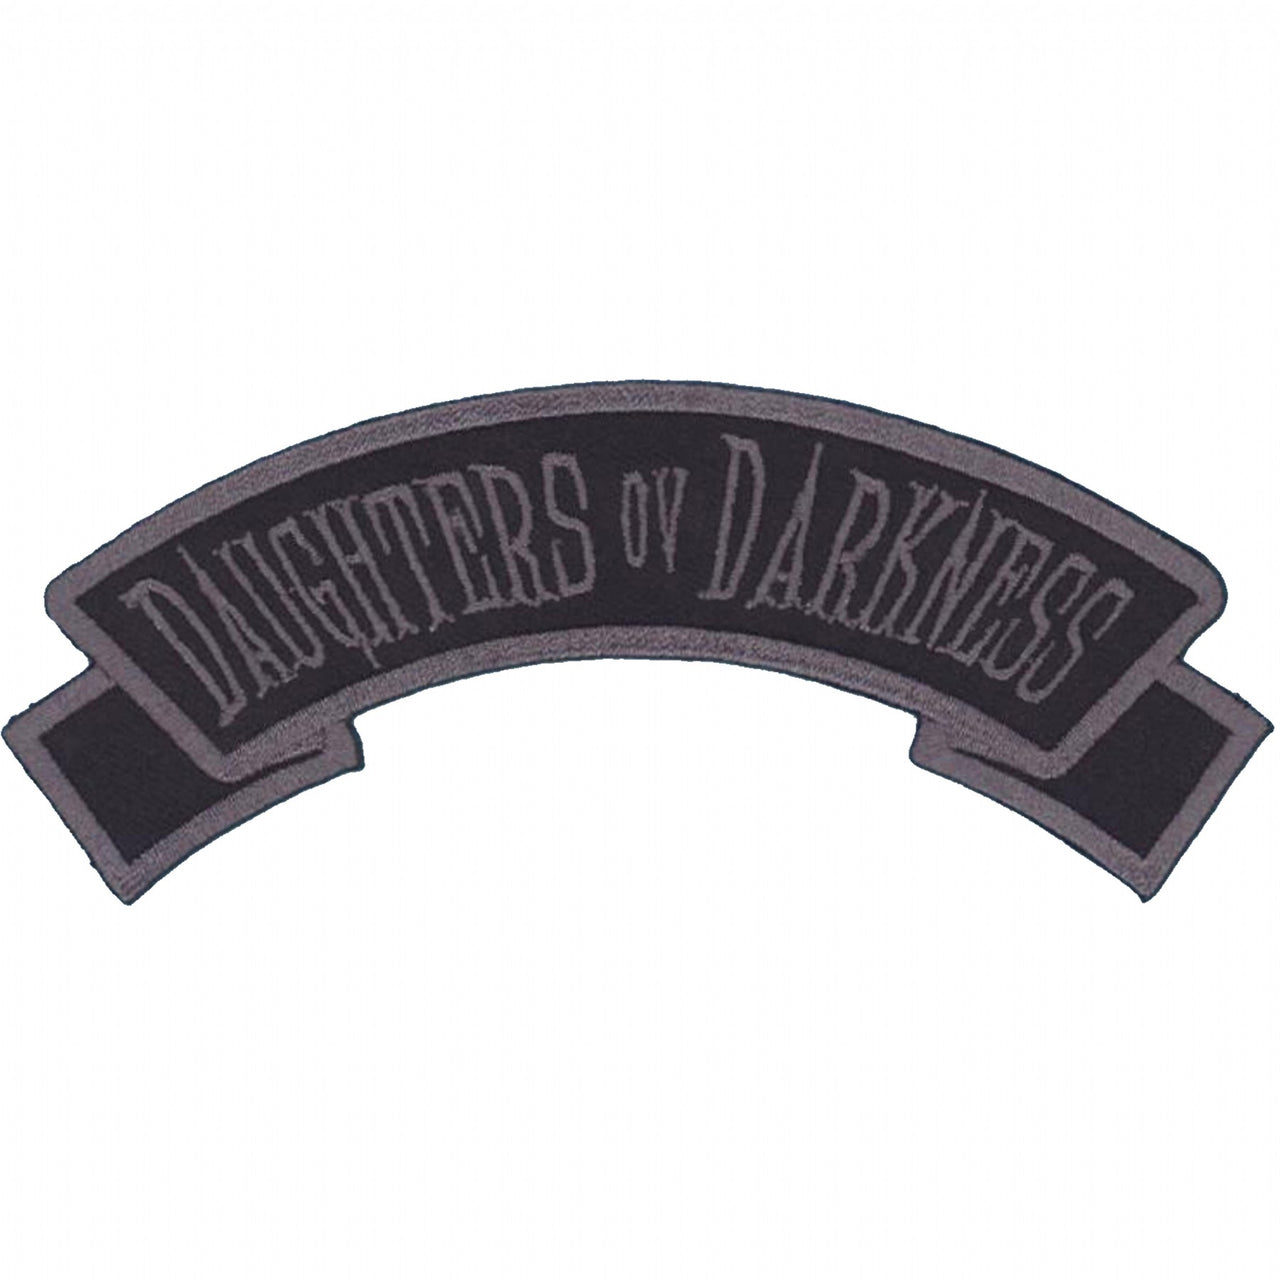 Arch Patch Daughters Ov Darkness - Kreepsville